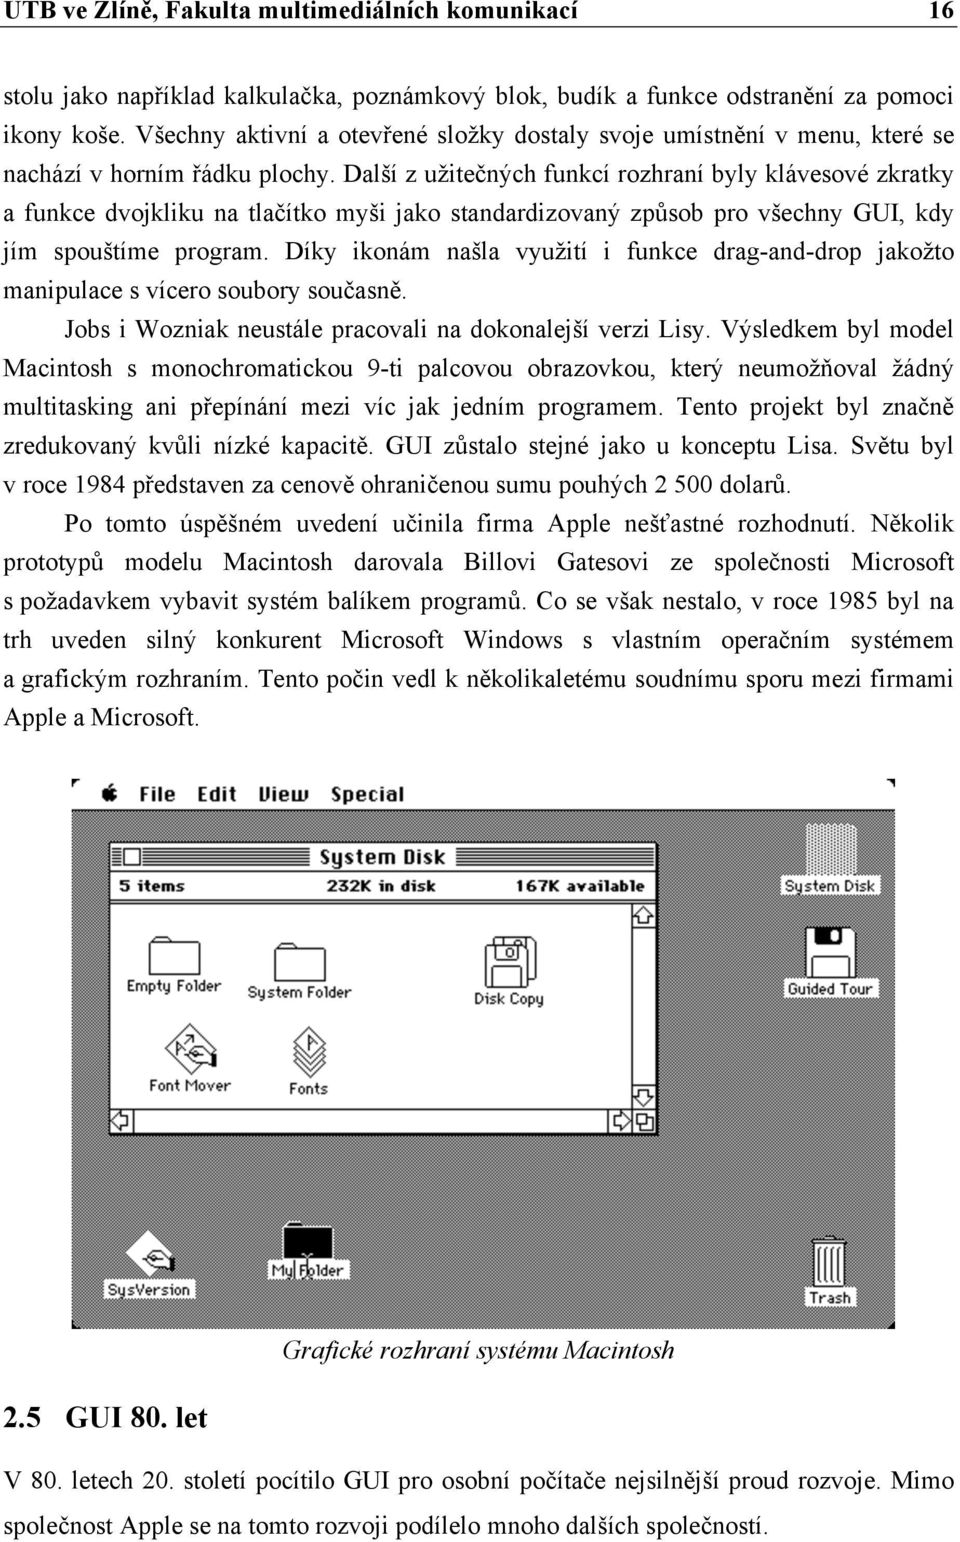 Další z užitečných funkcí rozhraní byly klávesové zkratky a funkce dvojkliku na tlačítko myši jako standardizovaný způsob pro všechny GUI, kdy jím spouštíme program.